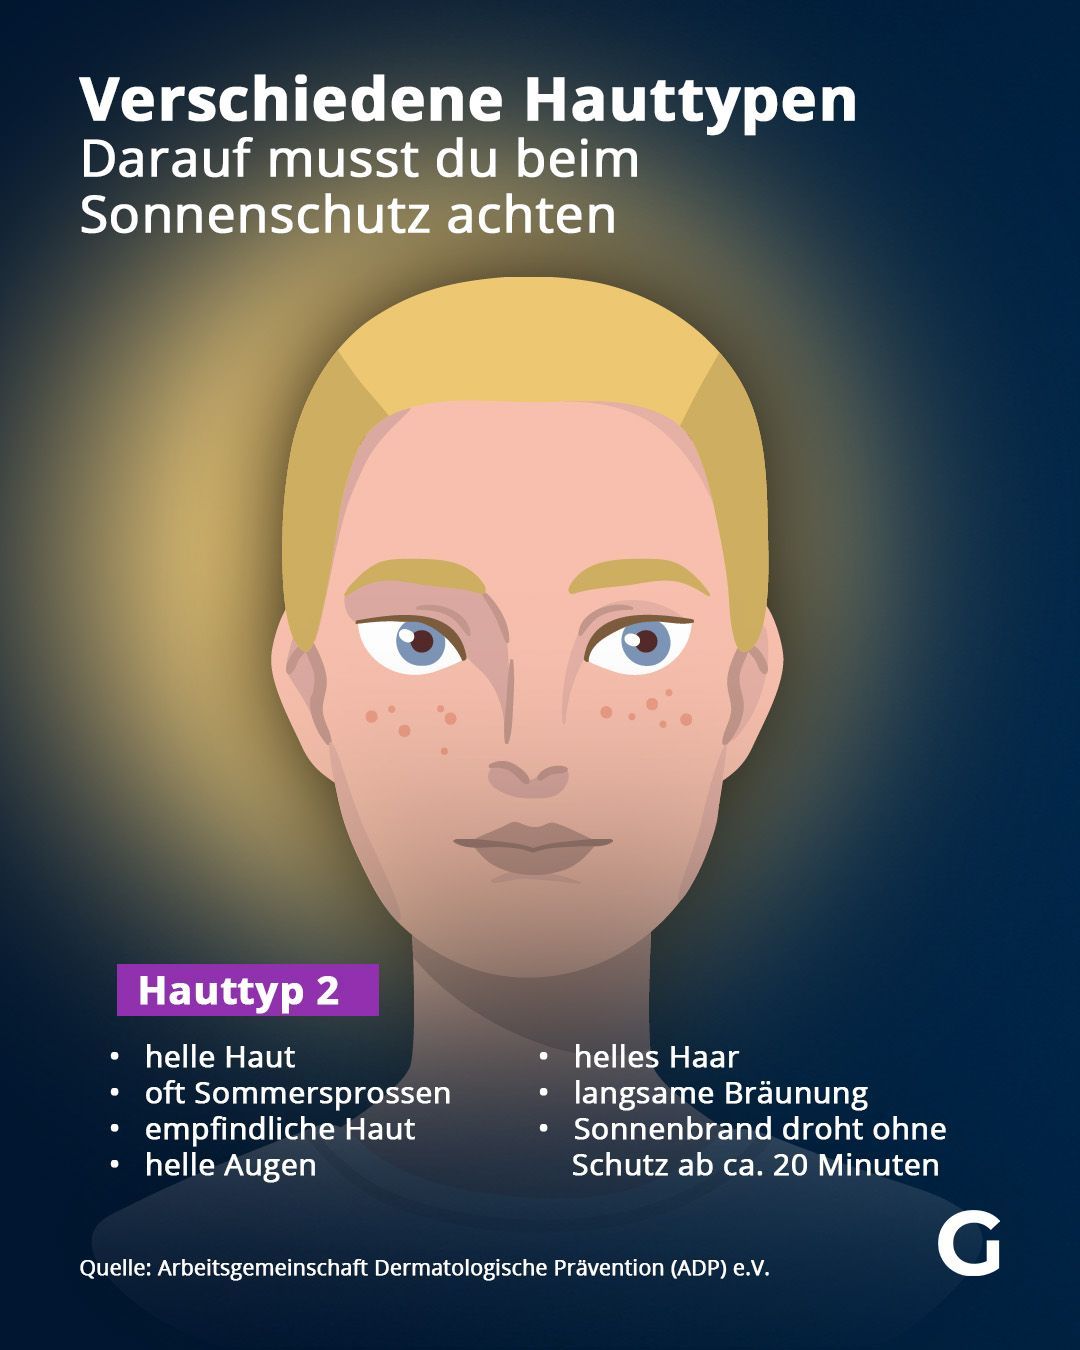 Eigenschutz der jeweiligen Hauttypen vor Sonne und Merkmale des Hauttyps.